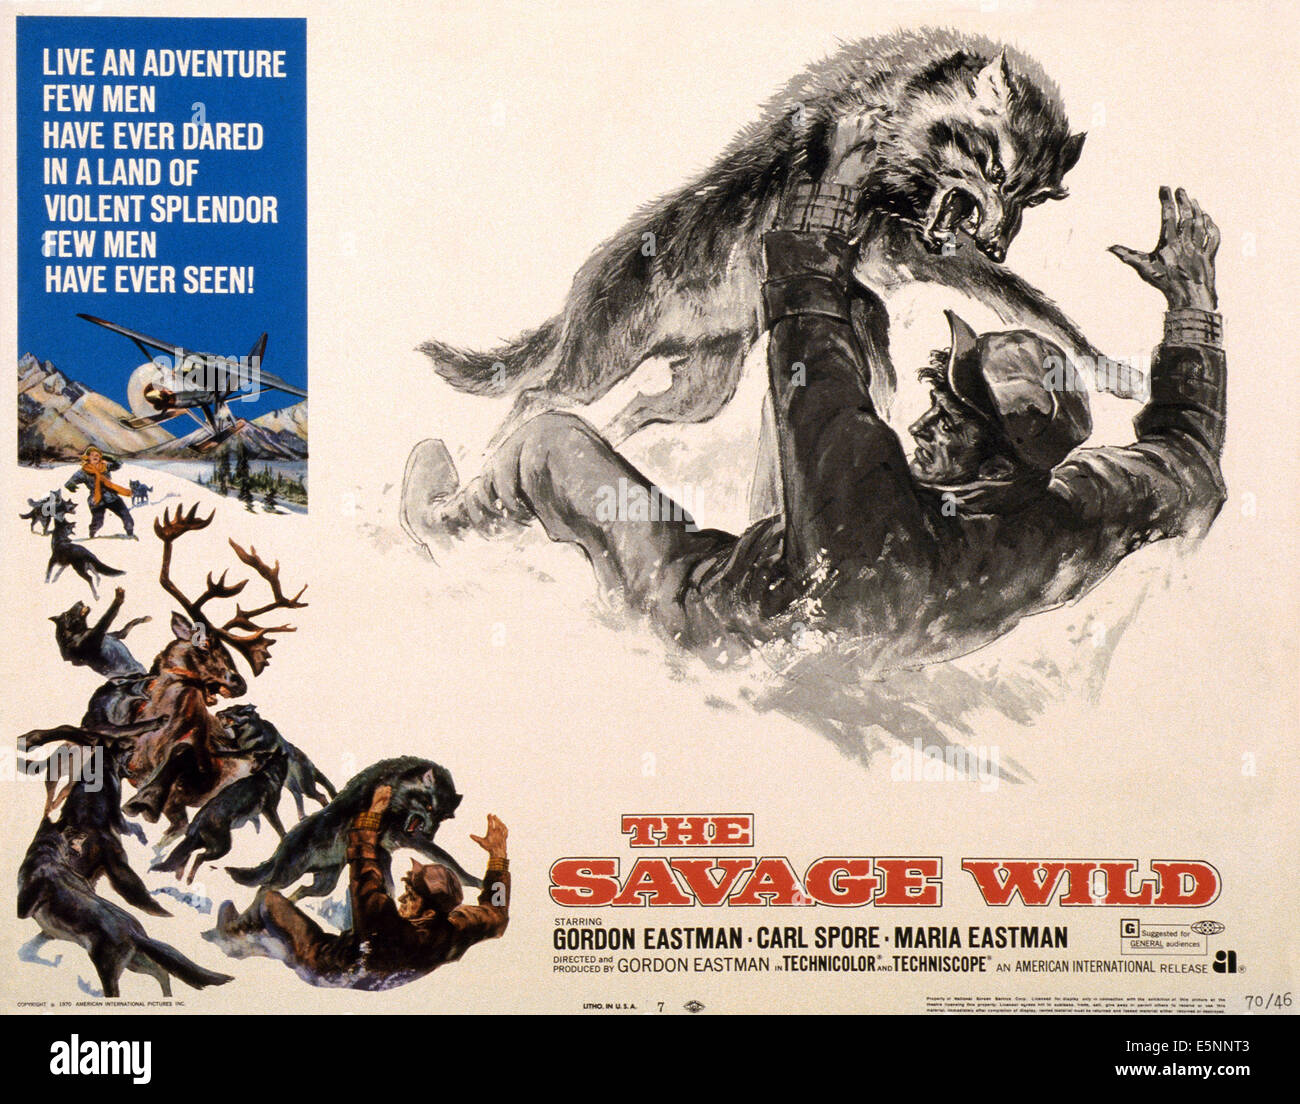 THE SAVAGE WILD, US lobbycard, 1970 Stock Photo